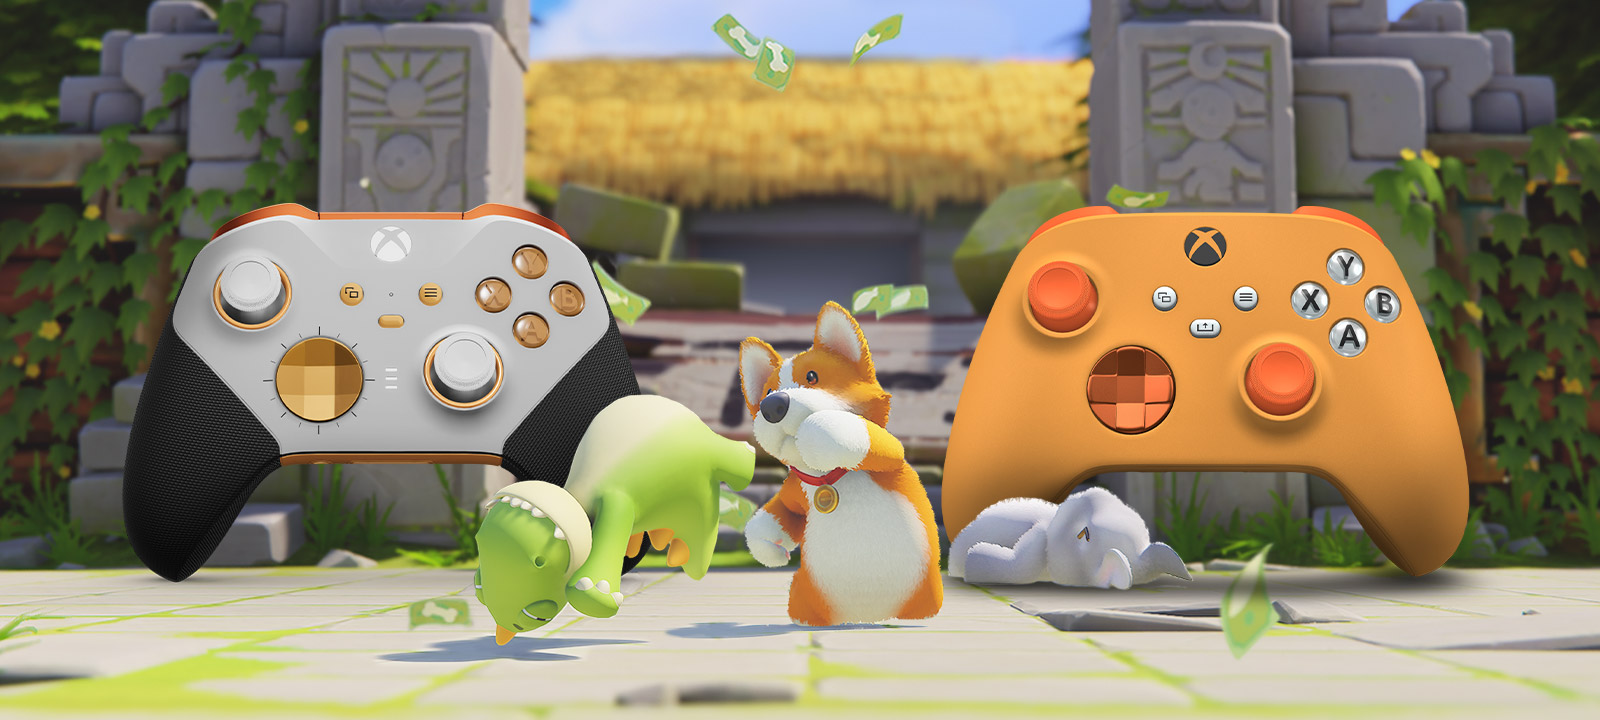 Party Animals. Trois animaux mignons se battent devant deux manettes personnalisées par le Xbox Design Lab.